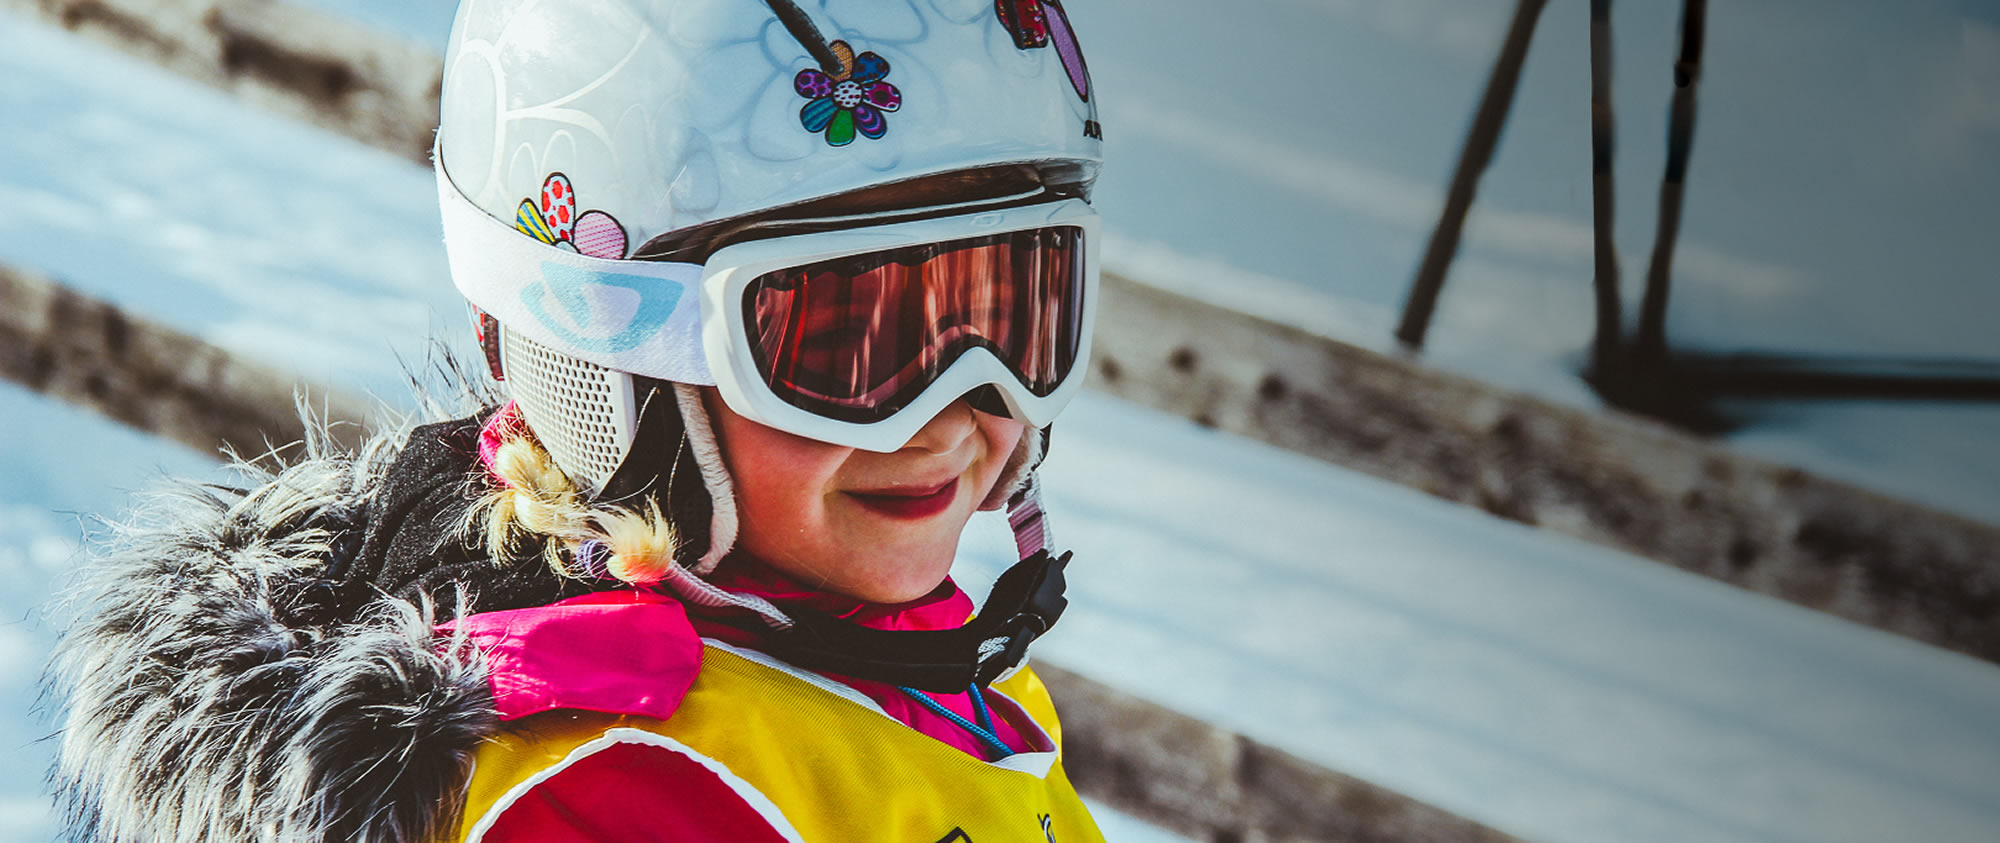 Bambiniskikurs für die kleinen Skifahrer ab 3 Jahren in Flachau, Snow Space Salzburg